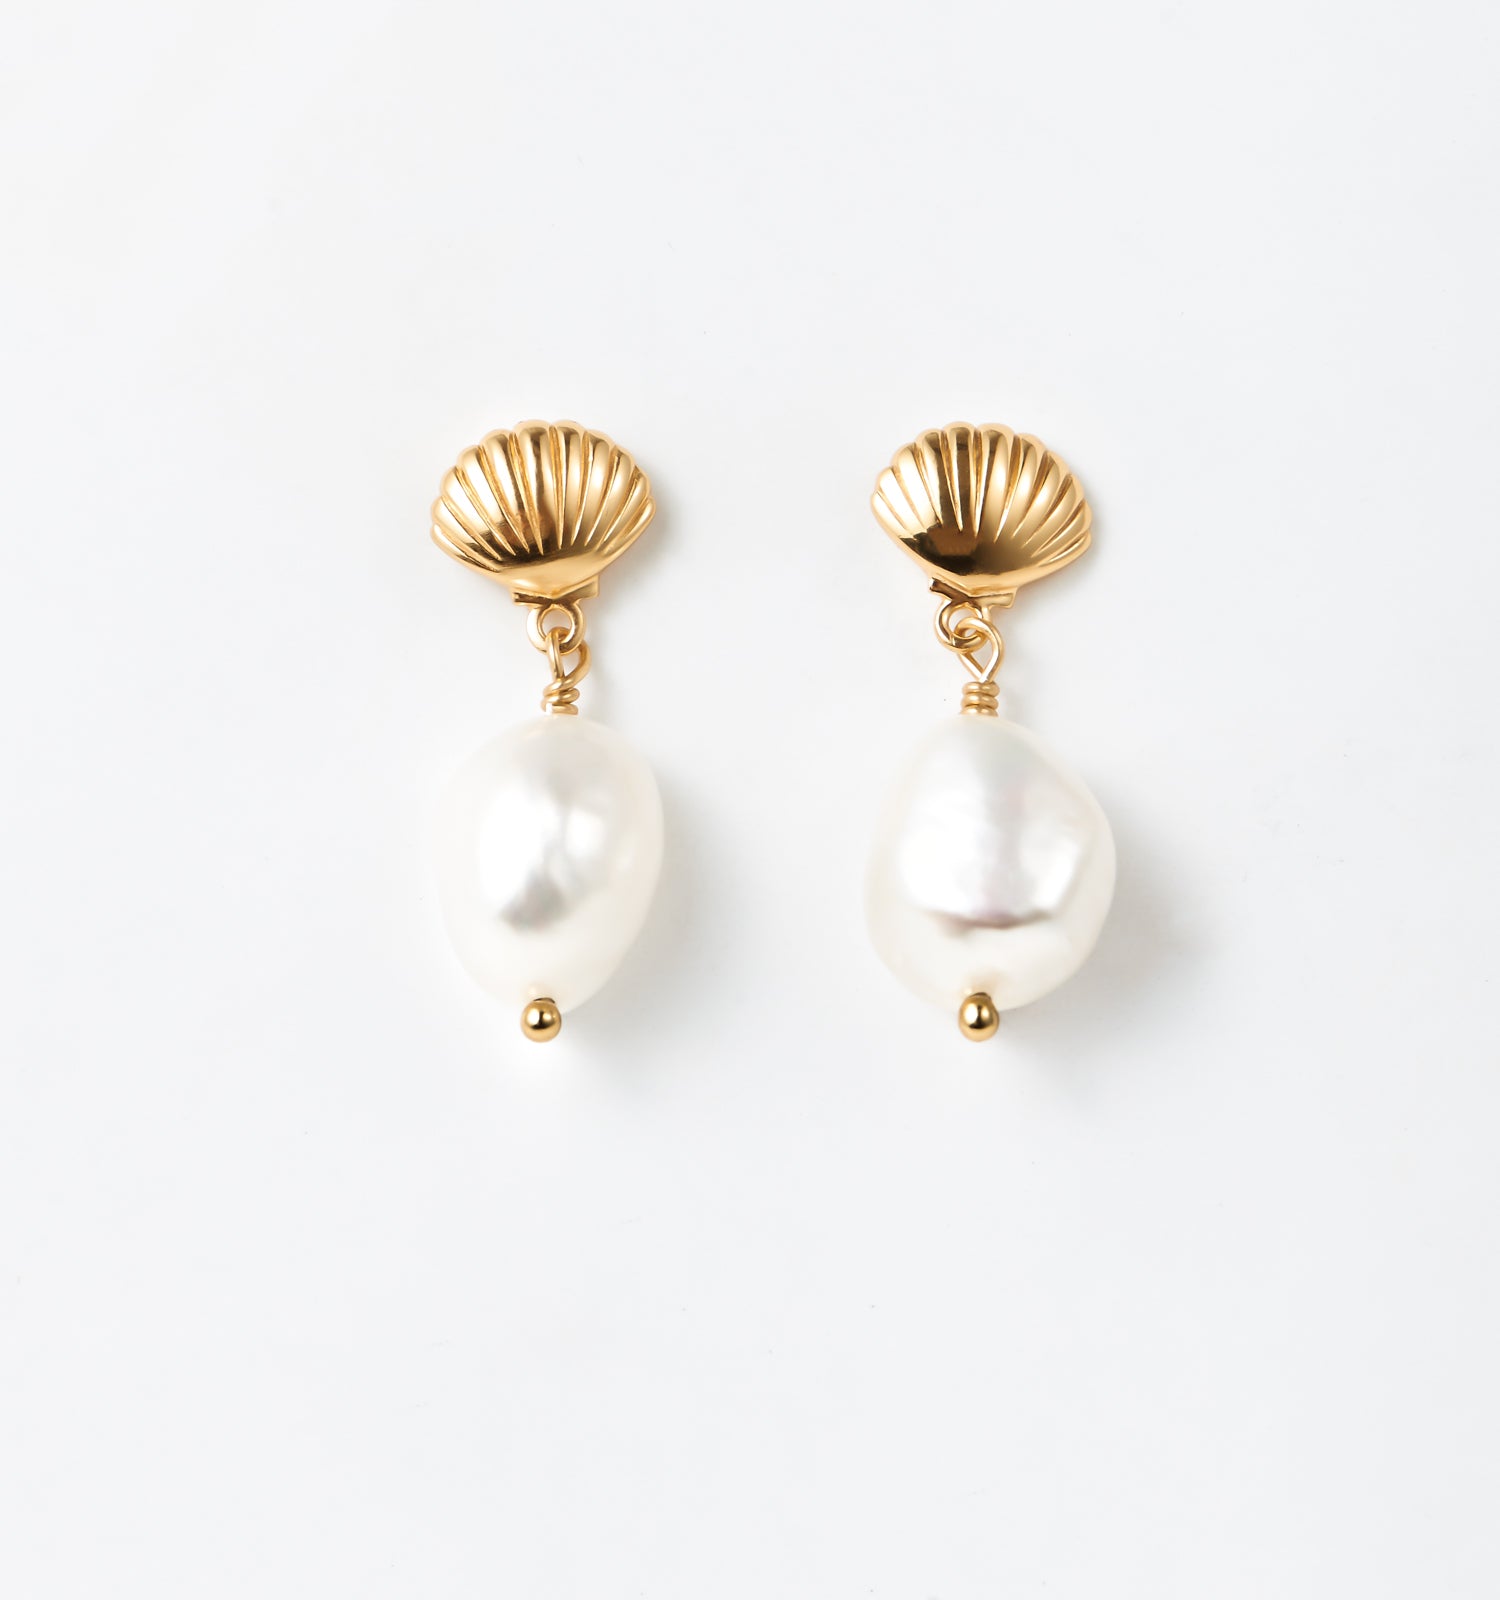 Scallop Shell Earrings